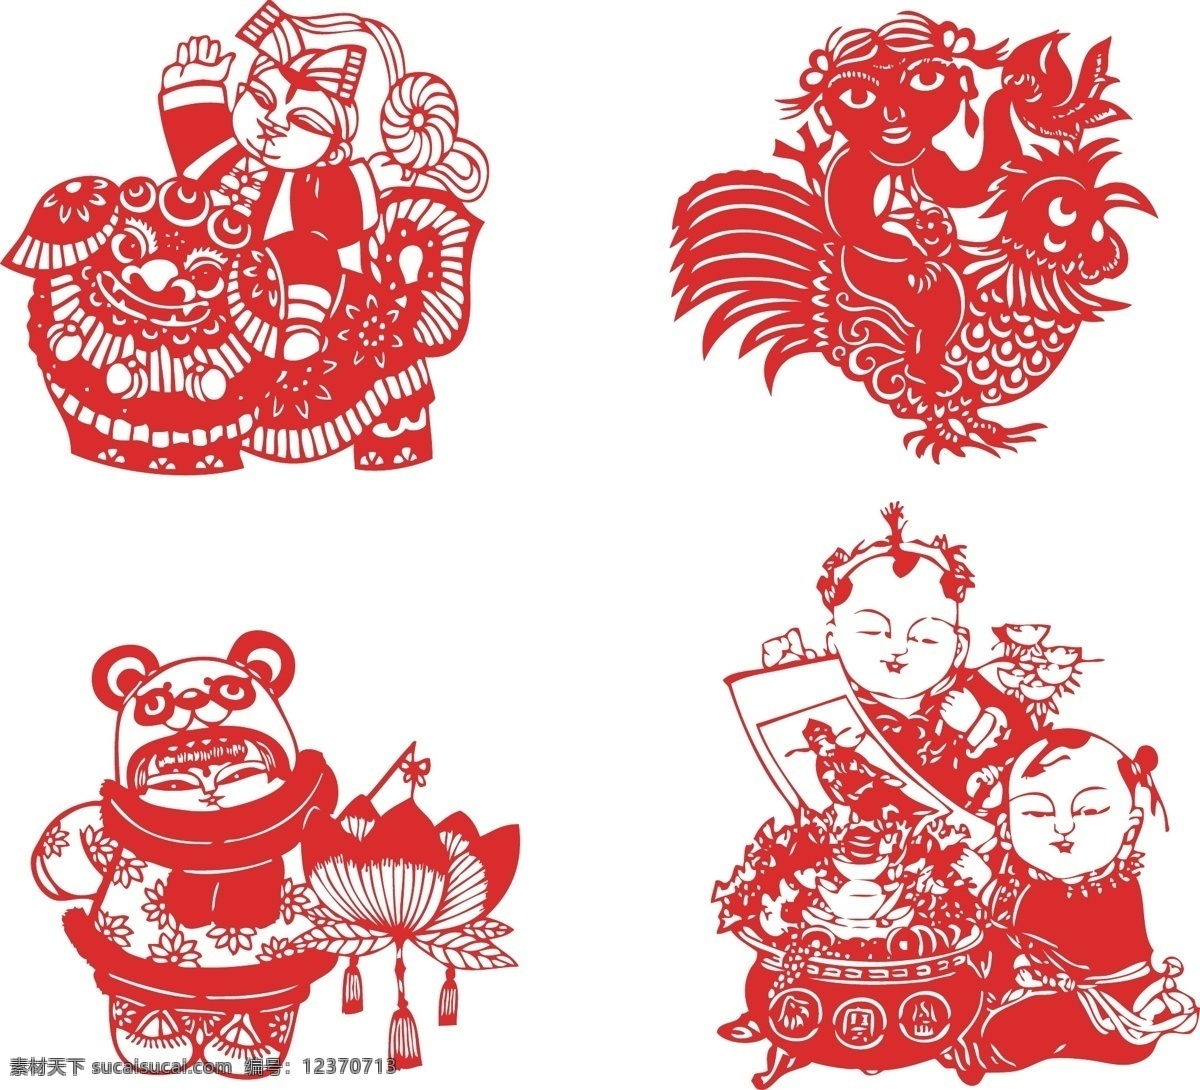 年画 娃娃 红色 剪纸 矢量 4款 年画娃娃 喜庆 民俗 节庆 高清精美素材 文化艺术 传统文化